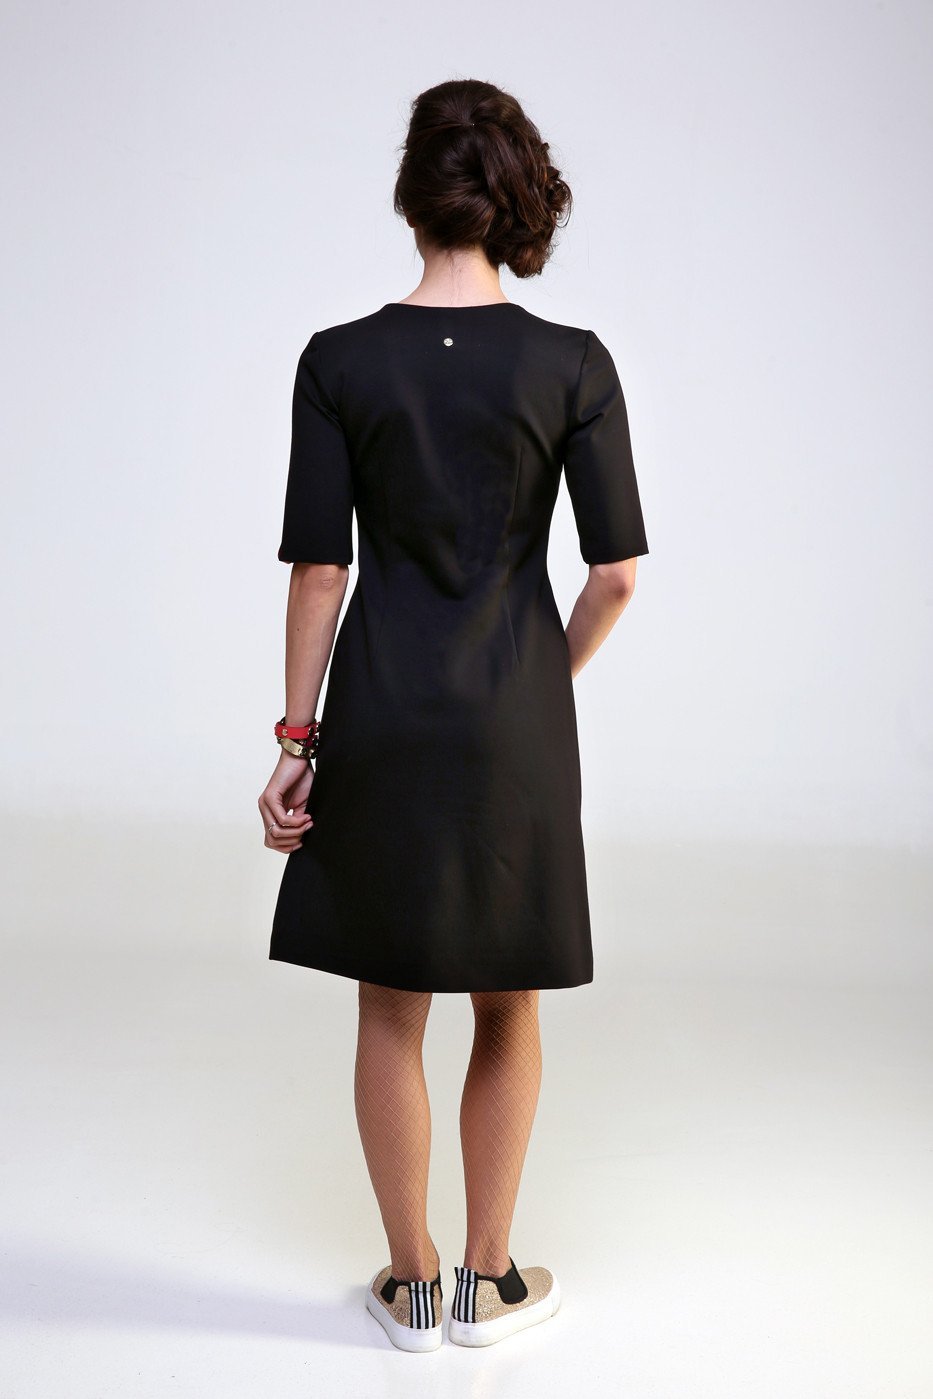 luxembourg-ruha-v-nyakkal-konyekig-ero-ujjal-fekete-essential-wadrobe-kapszularuhatar-webshop